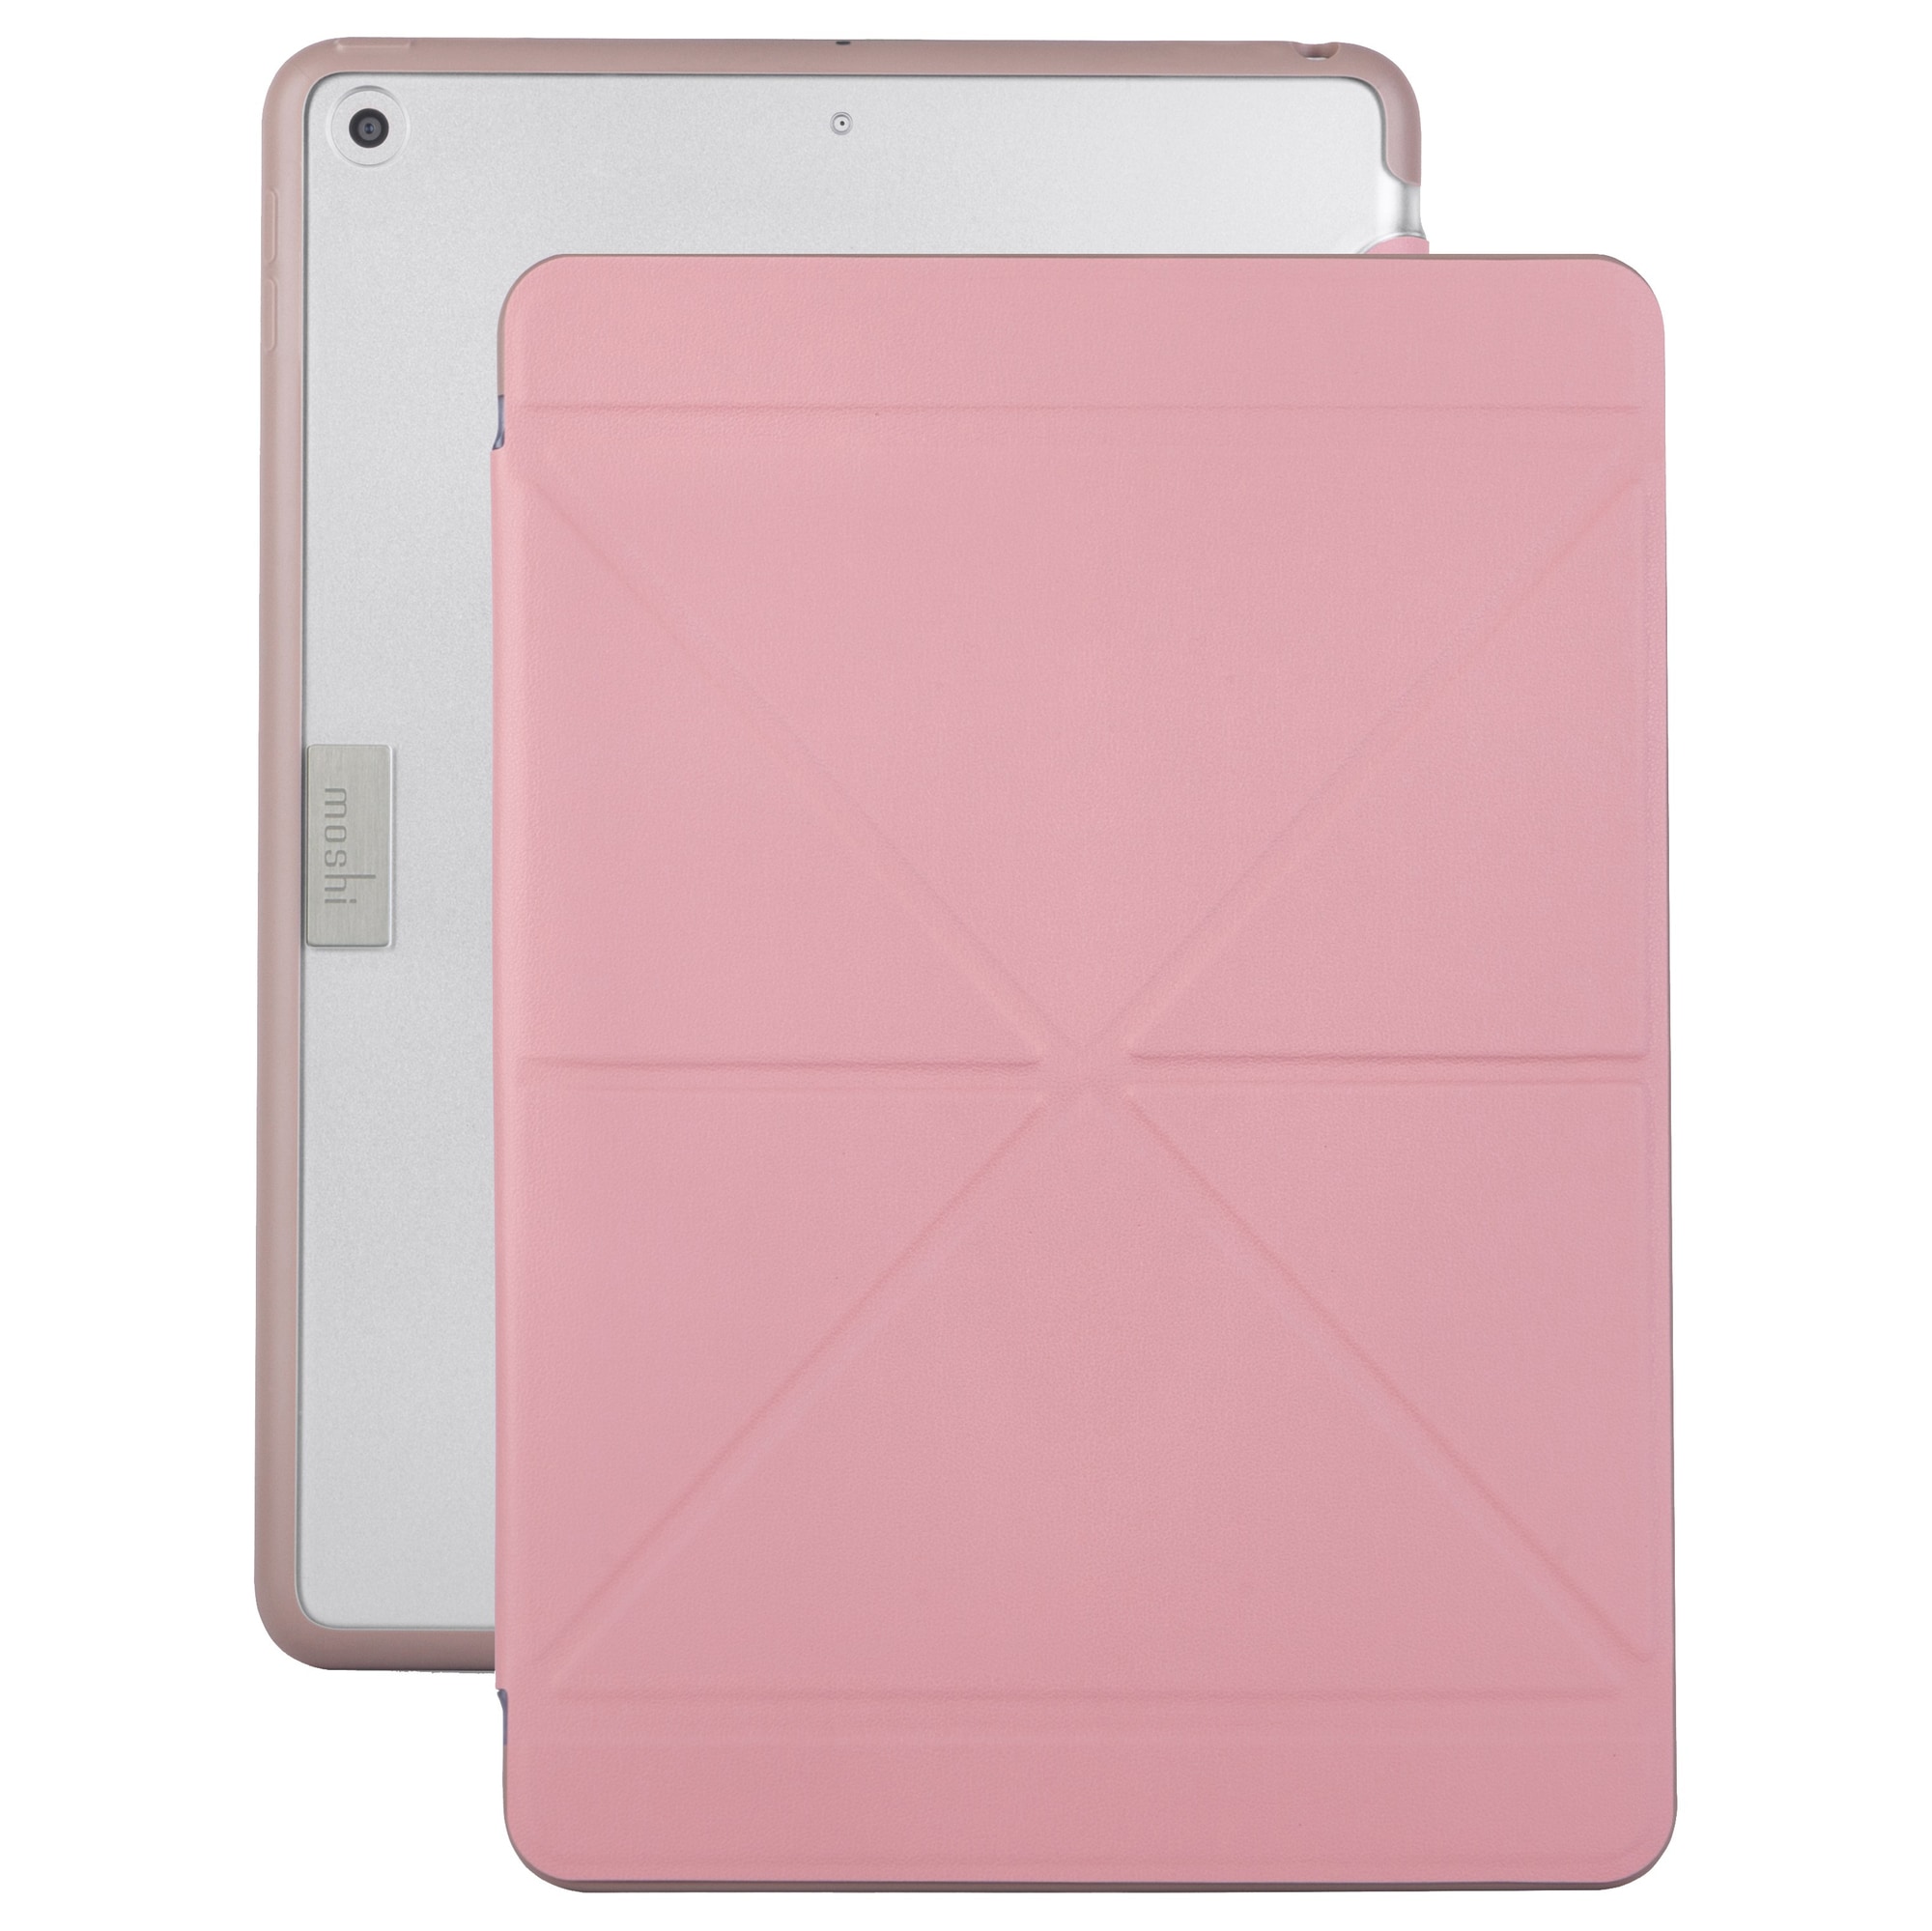 VersaCover iPad Pro 9.7" suojakotelo (pinkki) - Gigantti verkkokauppa